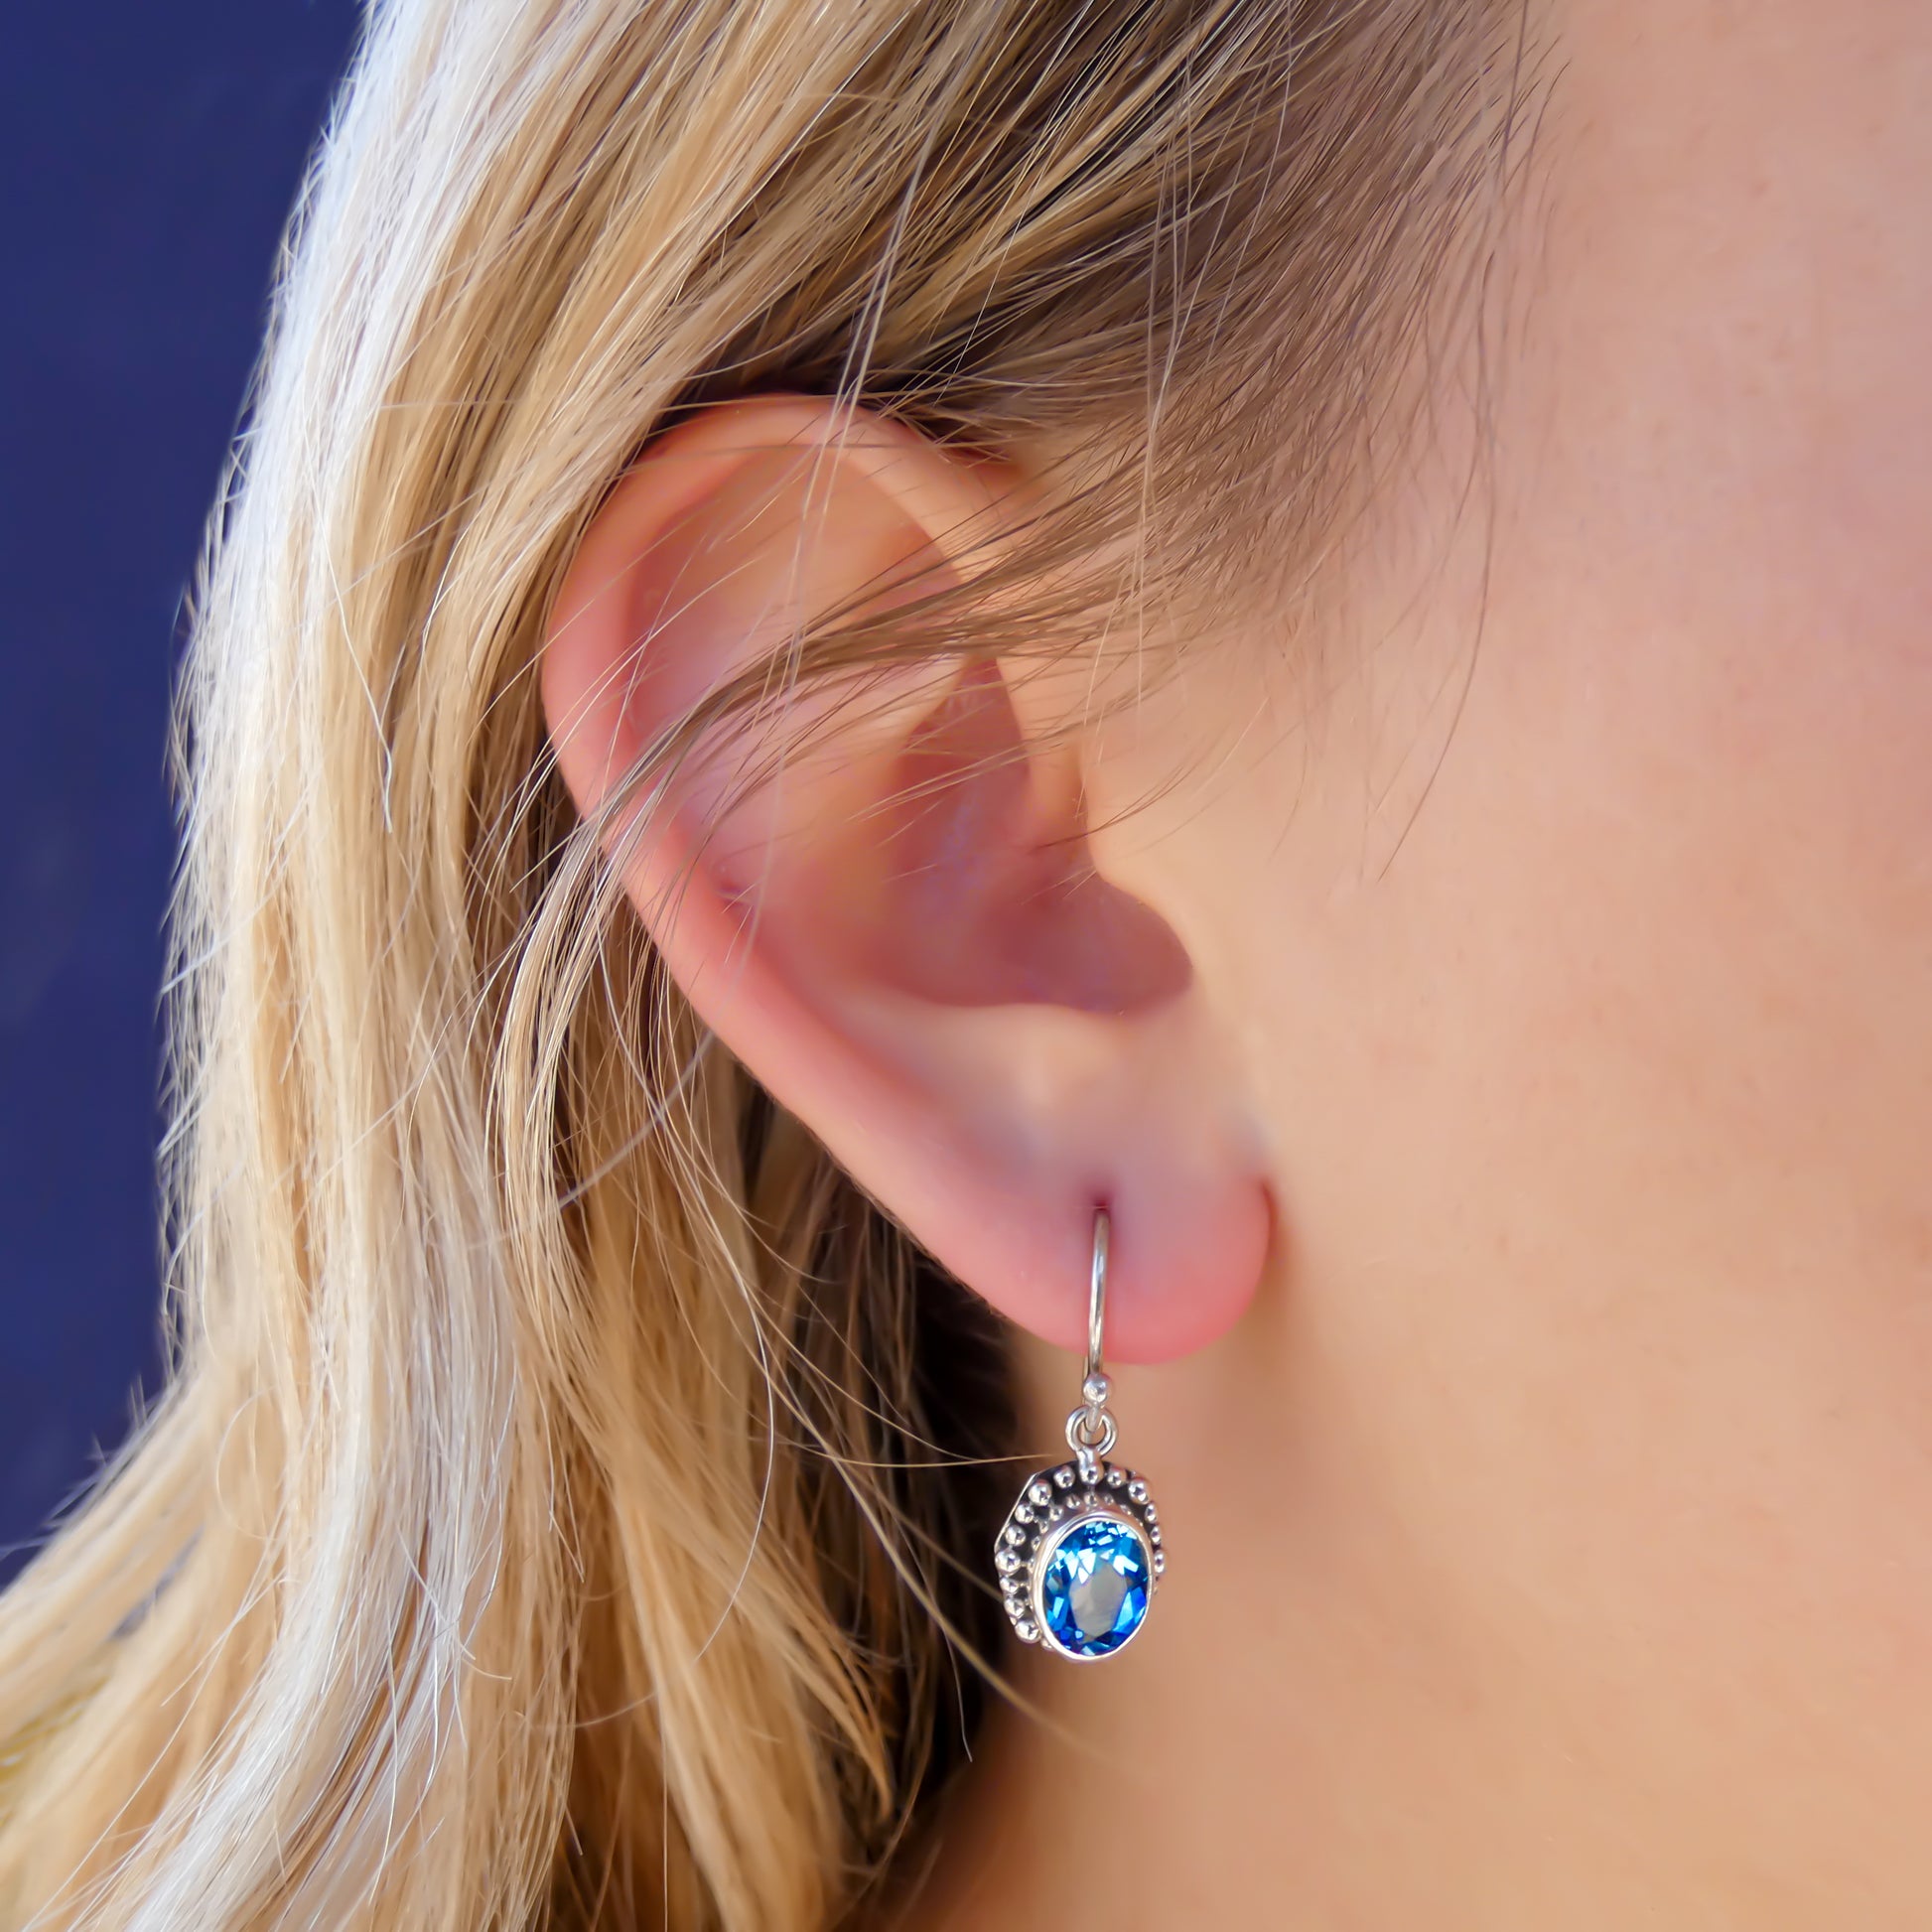 Woman wearing silver earrings with oval blue topaz gemstones.